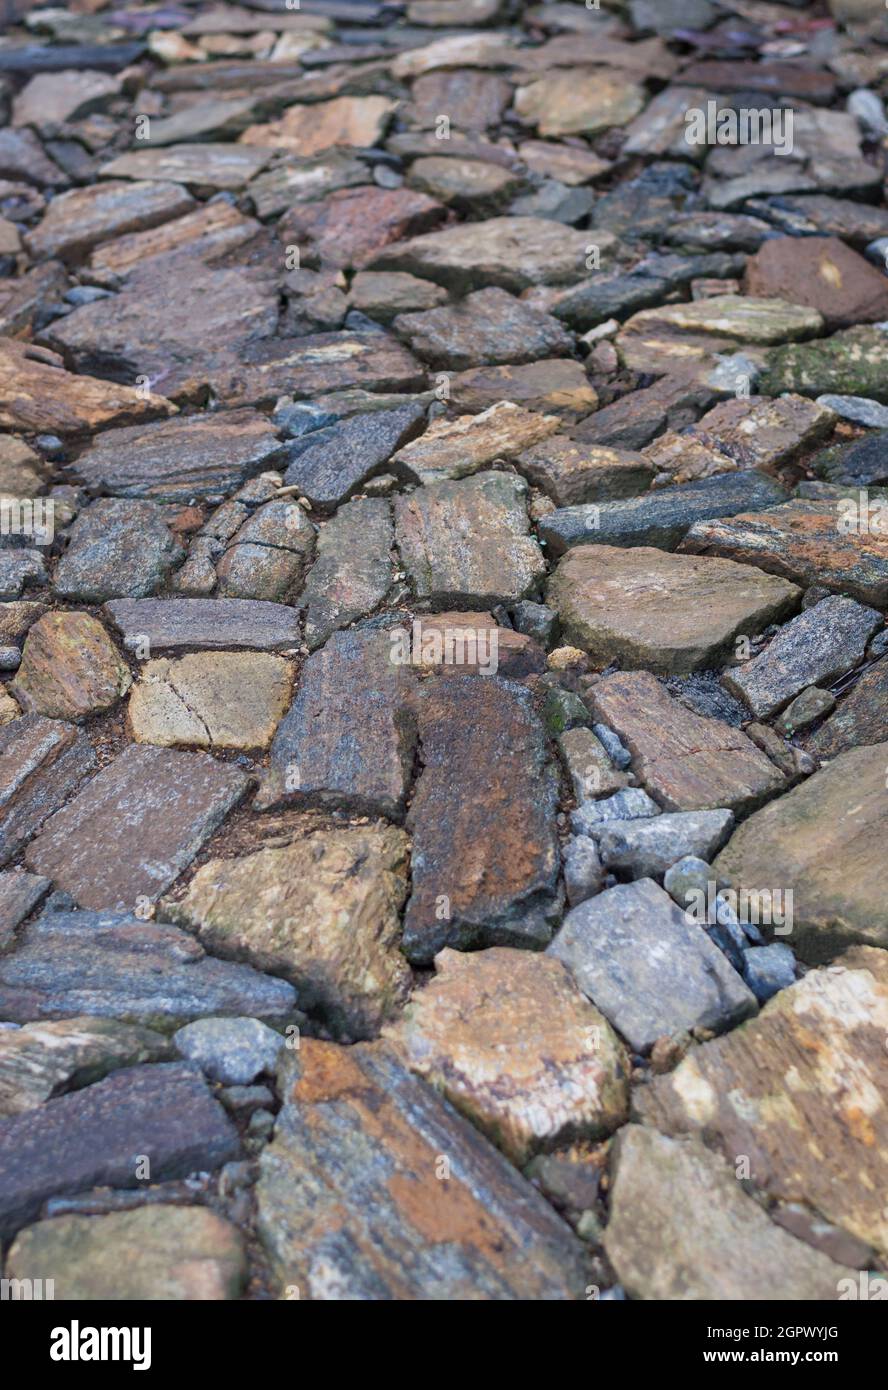 Steinpfad oder Steinweg, Abschnitt von Trittsteinen des Gartenweges, in geringer Schärfentiefe geschossen, Texturhintergrund Stockfoto